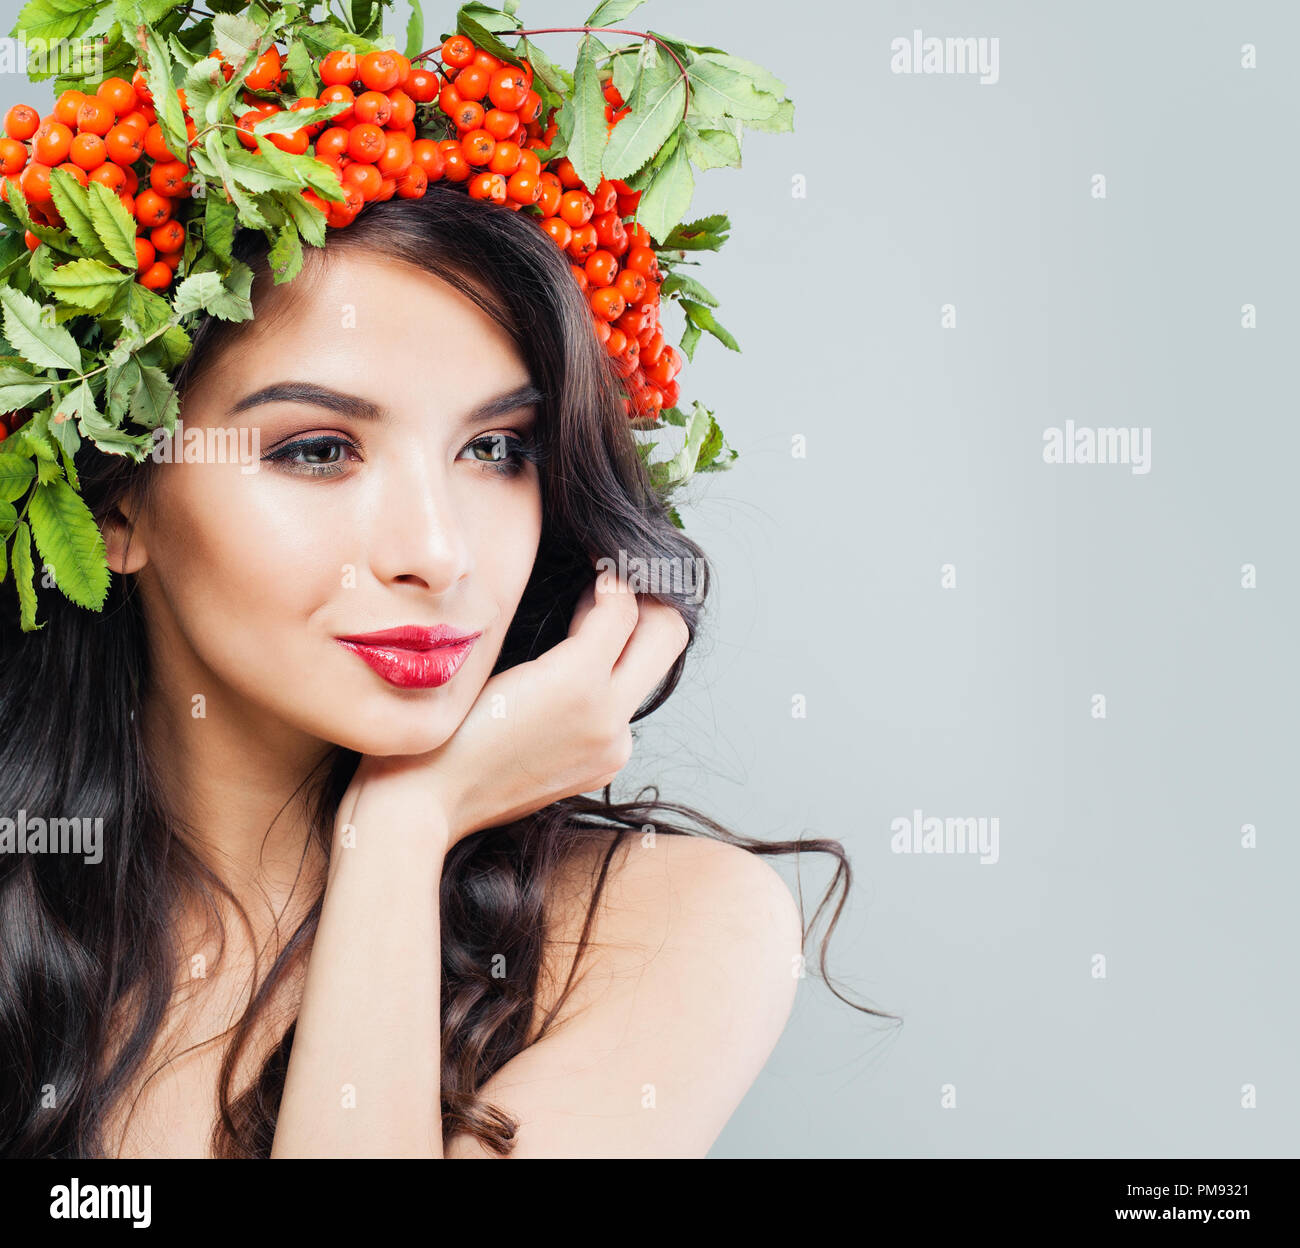 Perfekte junge brünette Frau mit langen gewelltes Haar, Make-up und roten Beeren und grünen Blättern. Schönen weiblichen Gesichts Stockfoto